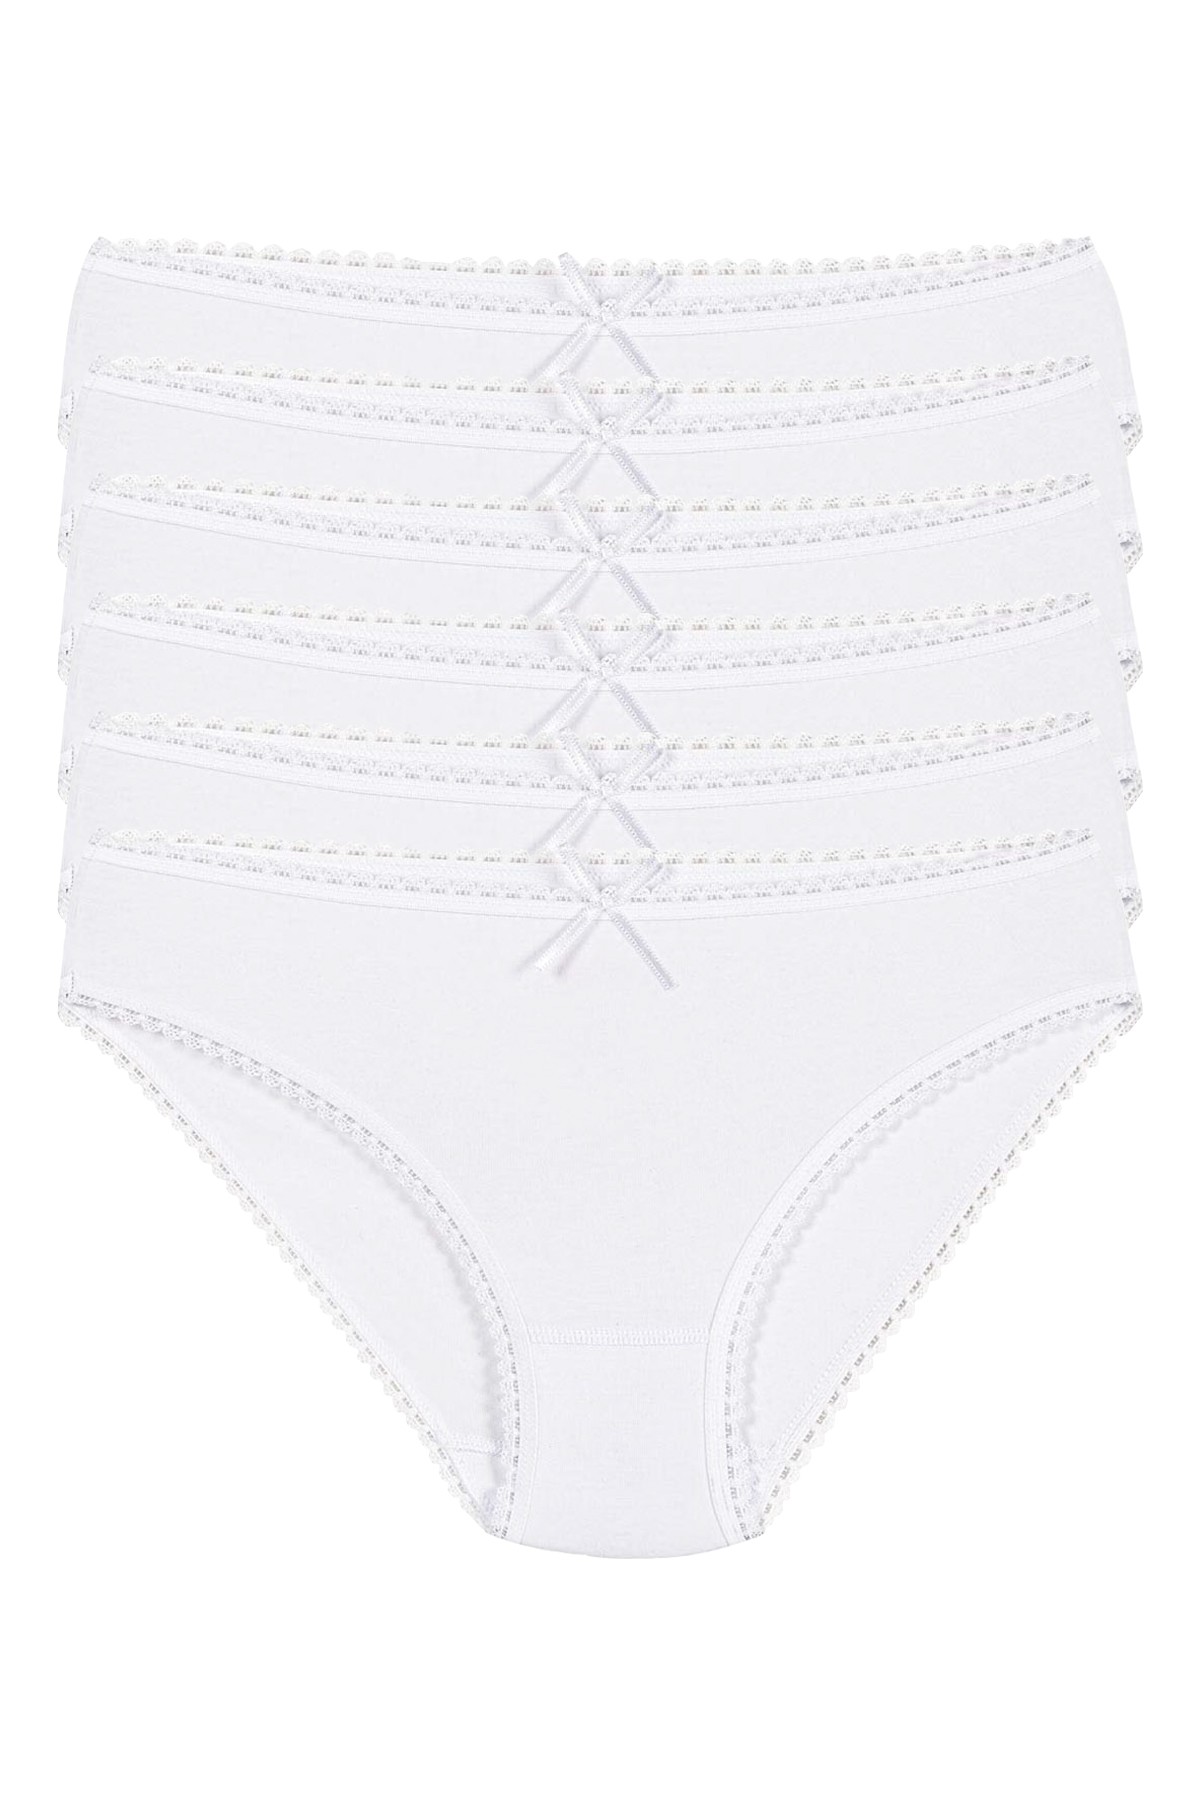 Kadın Beyaz 6'lı Paket Modal Dantelli Bikini Külot